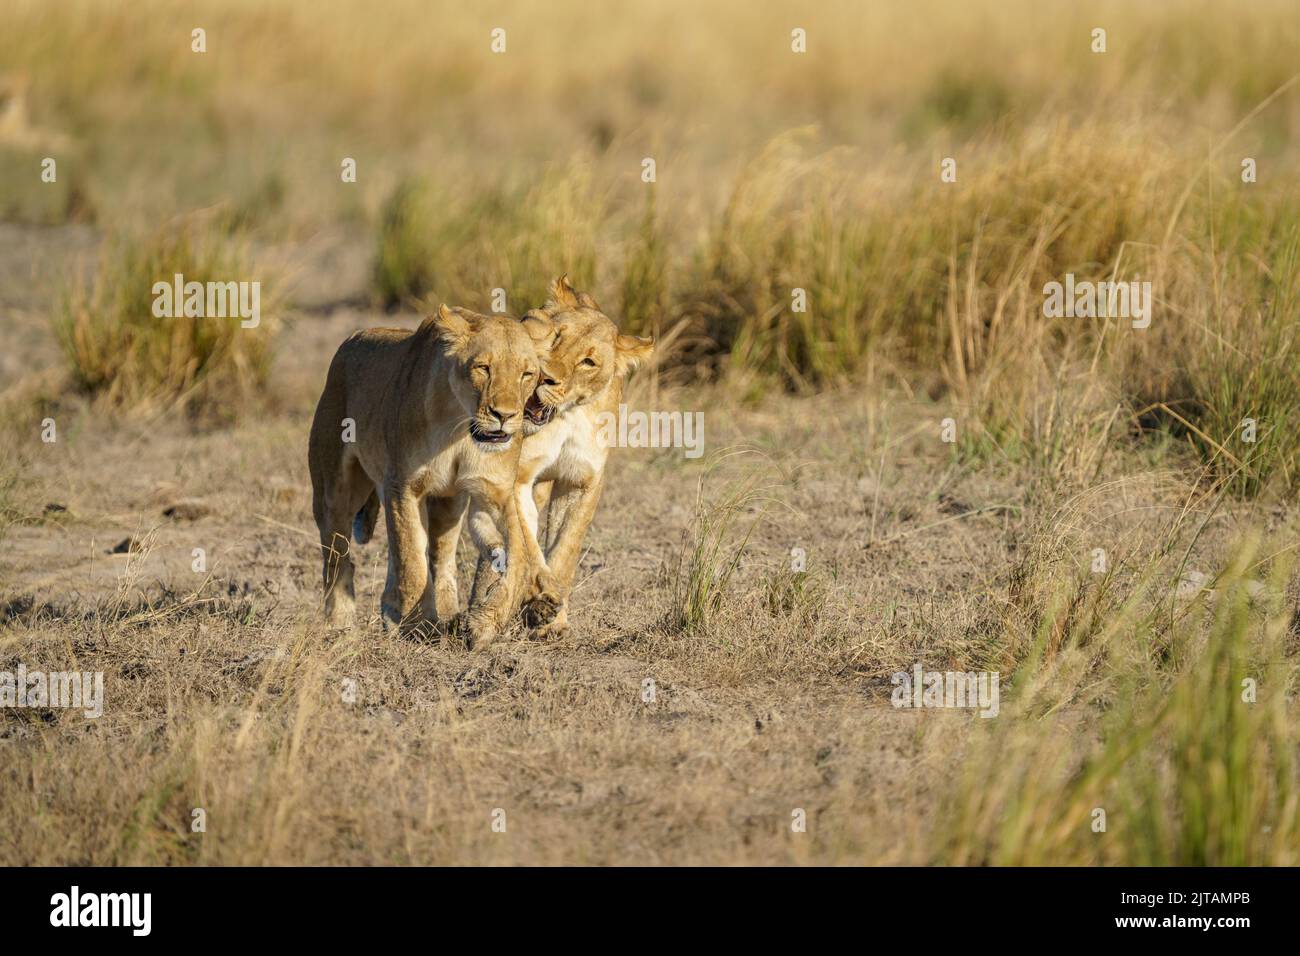 Lionesses, 2 animales adultos, juntos caminando en pastizales. Chobe National Park, Botswana, África Foto de stock